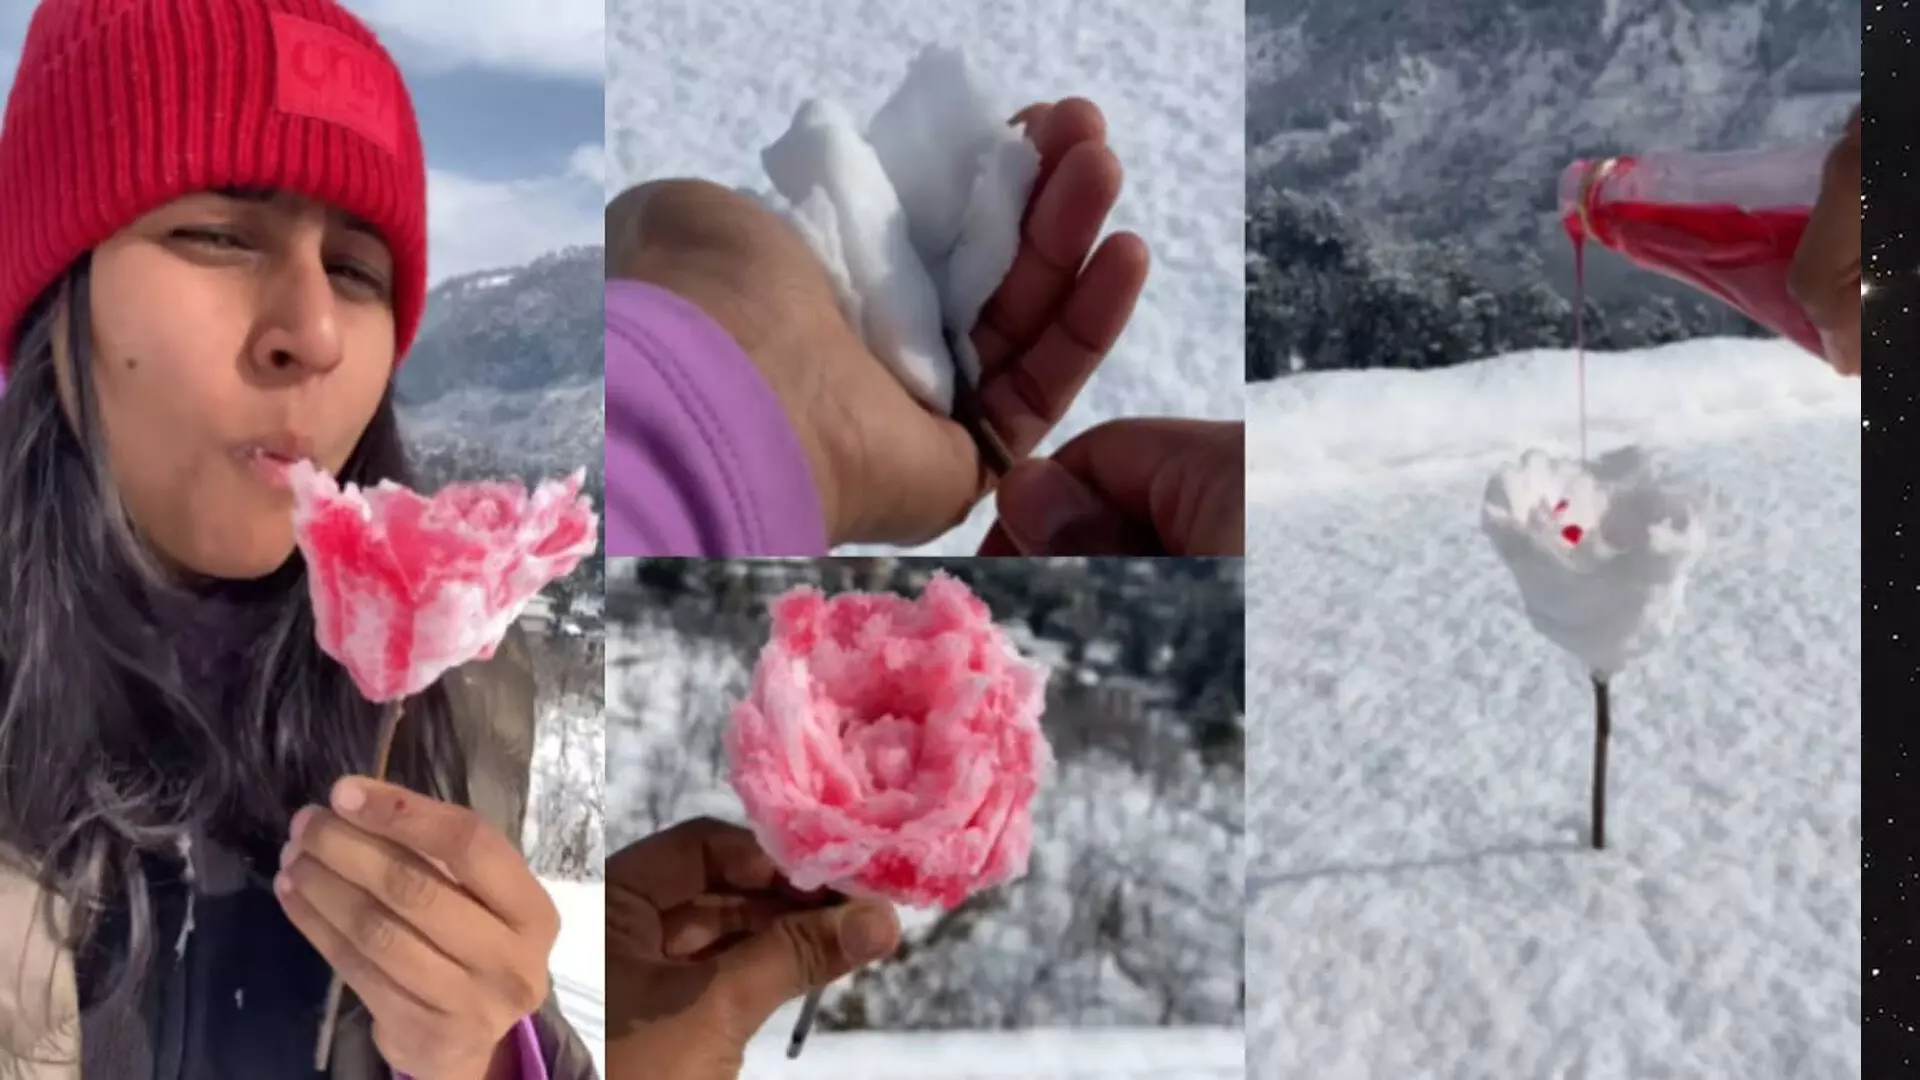 बर्फ से तैयार की गुलाब की आइसक्रीम, गोले की तरह खाया, देखें वीडियो...